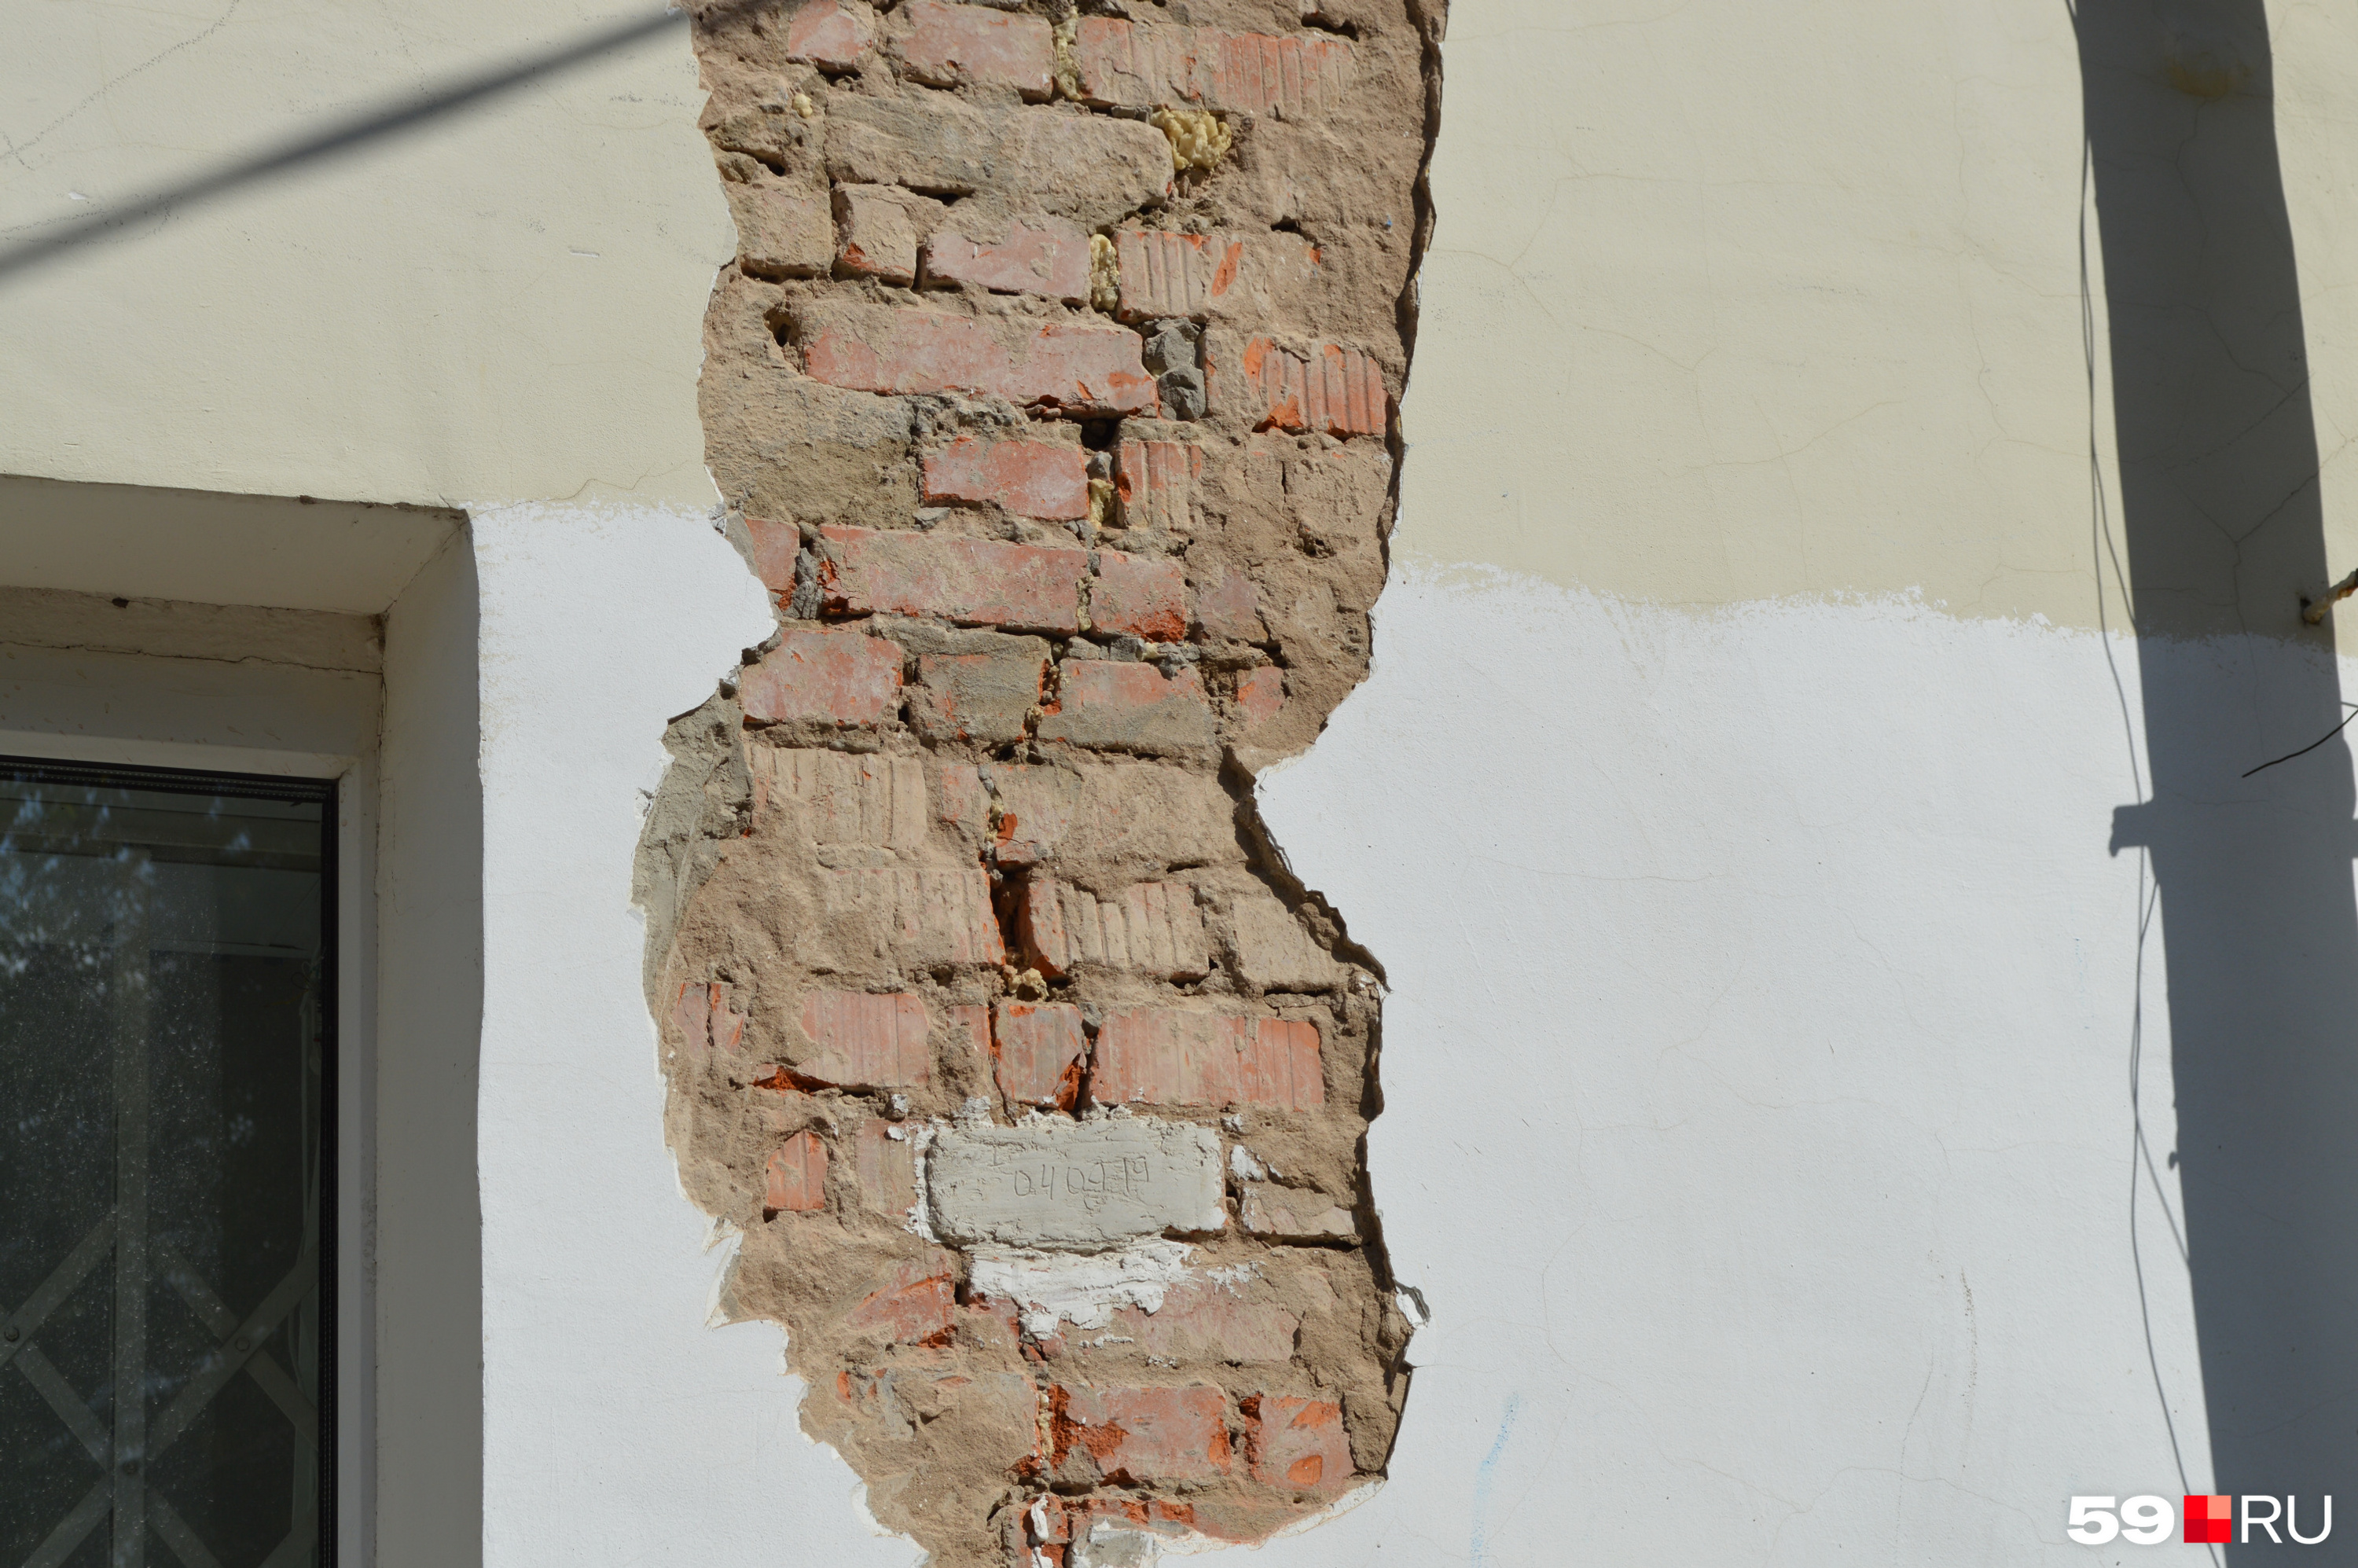 Трещина в кирпичной стене. Сквозные трещины в кирпичной стене. Вертикальные трещины в стенах. Трещина в многоквартирном доме из кирпича.